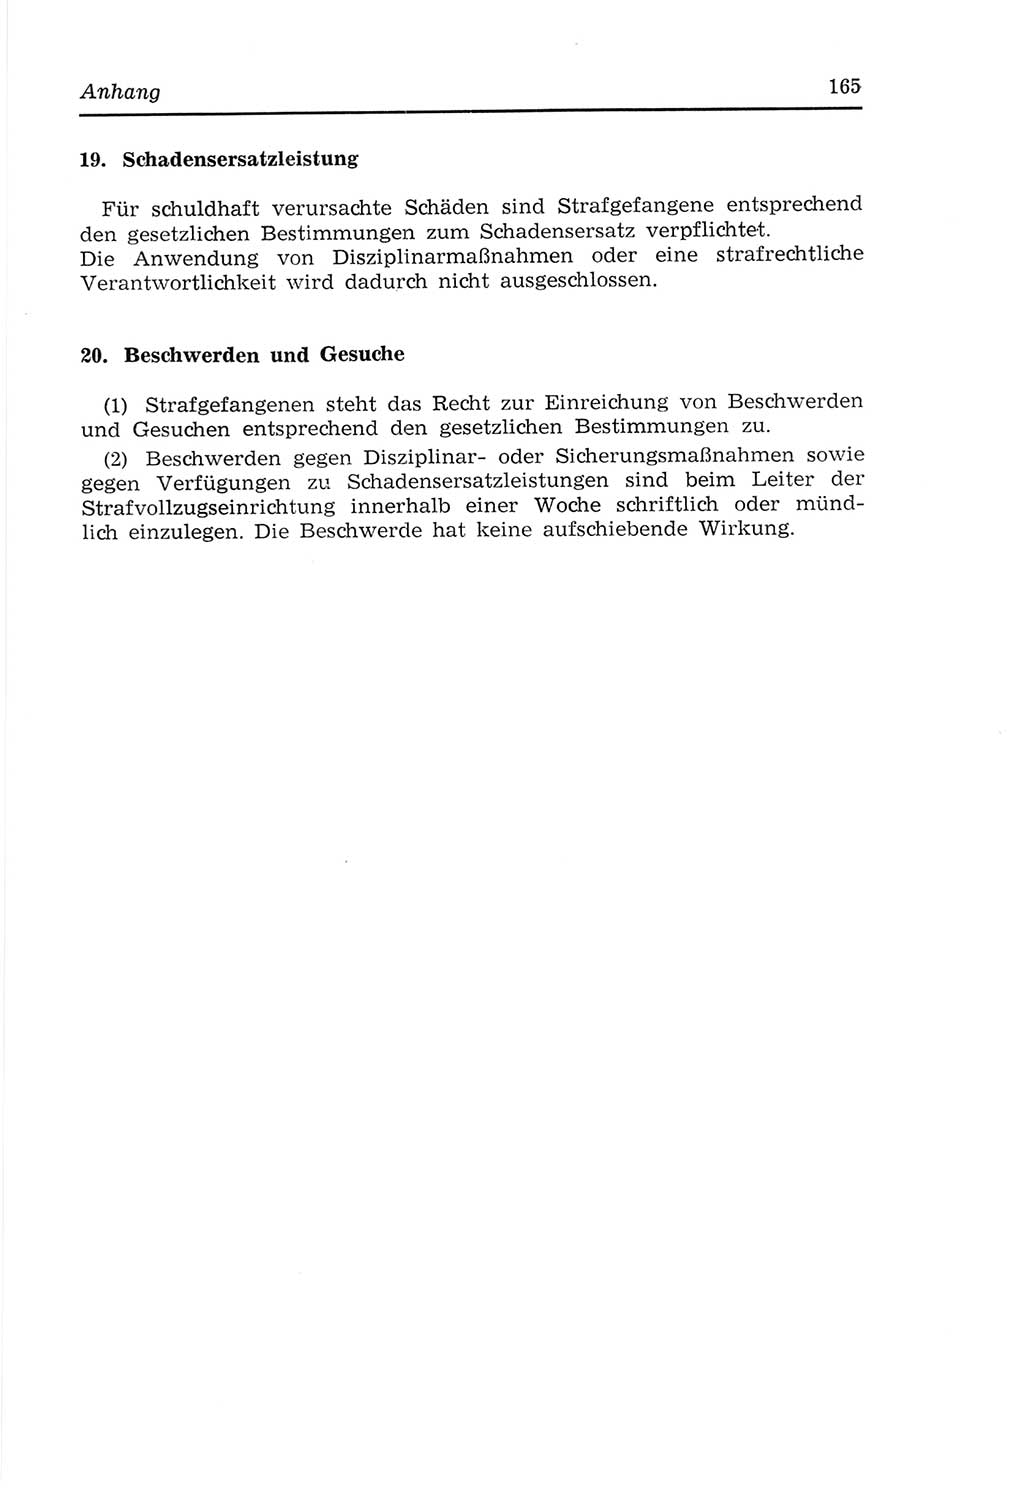 Strafvollzugs- und Wiedereingliederungsgesetz (SVWG) der Deutschen Demokratischen Republik (DDR) 1968, Seite 165 (SVWG DDR 1968, S. 165)